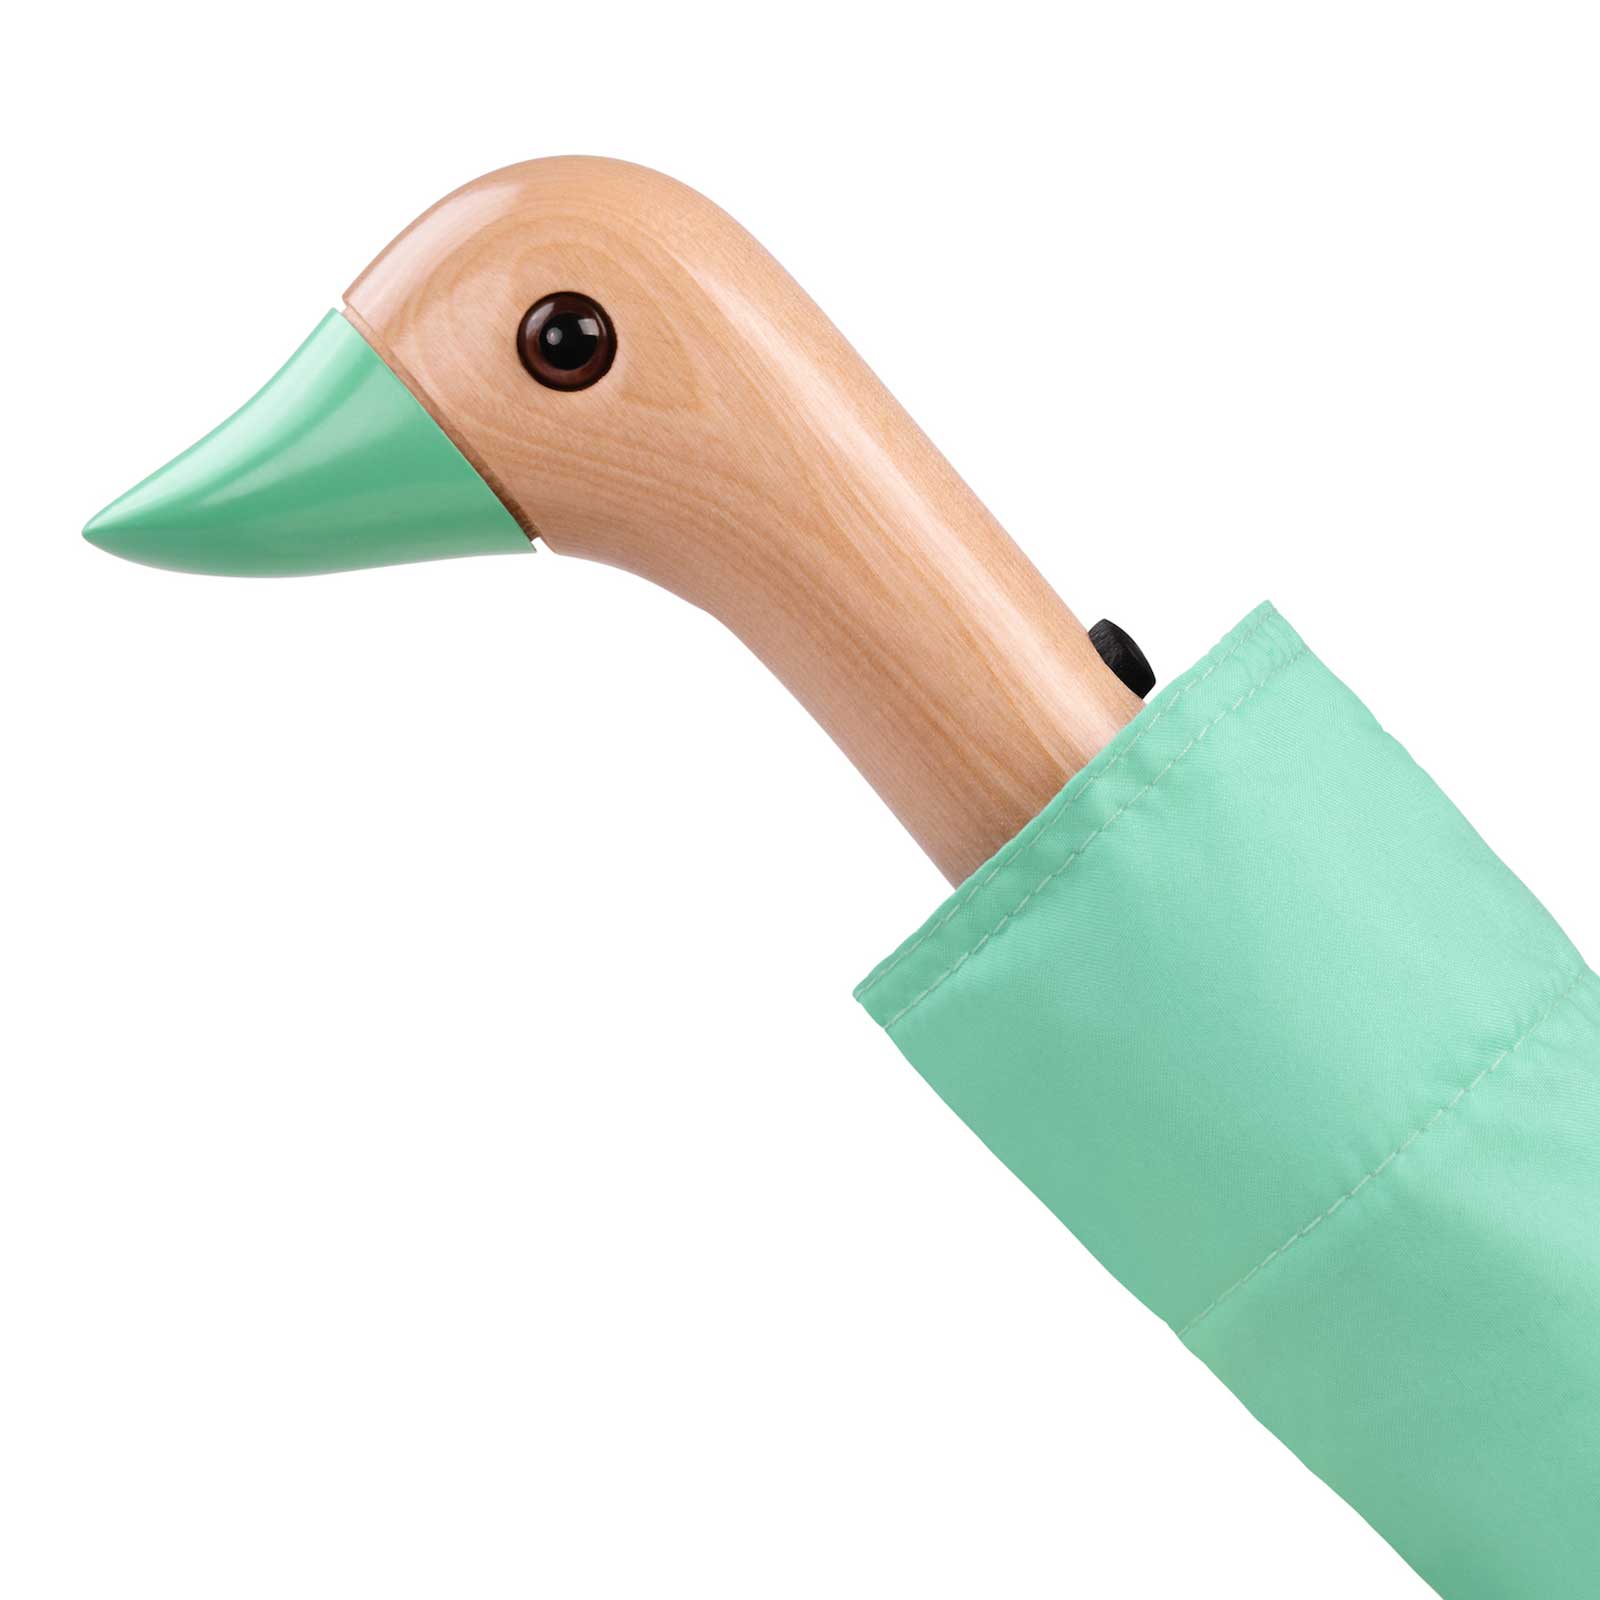 The Original Duckhead Folding Umbrella - Mint